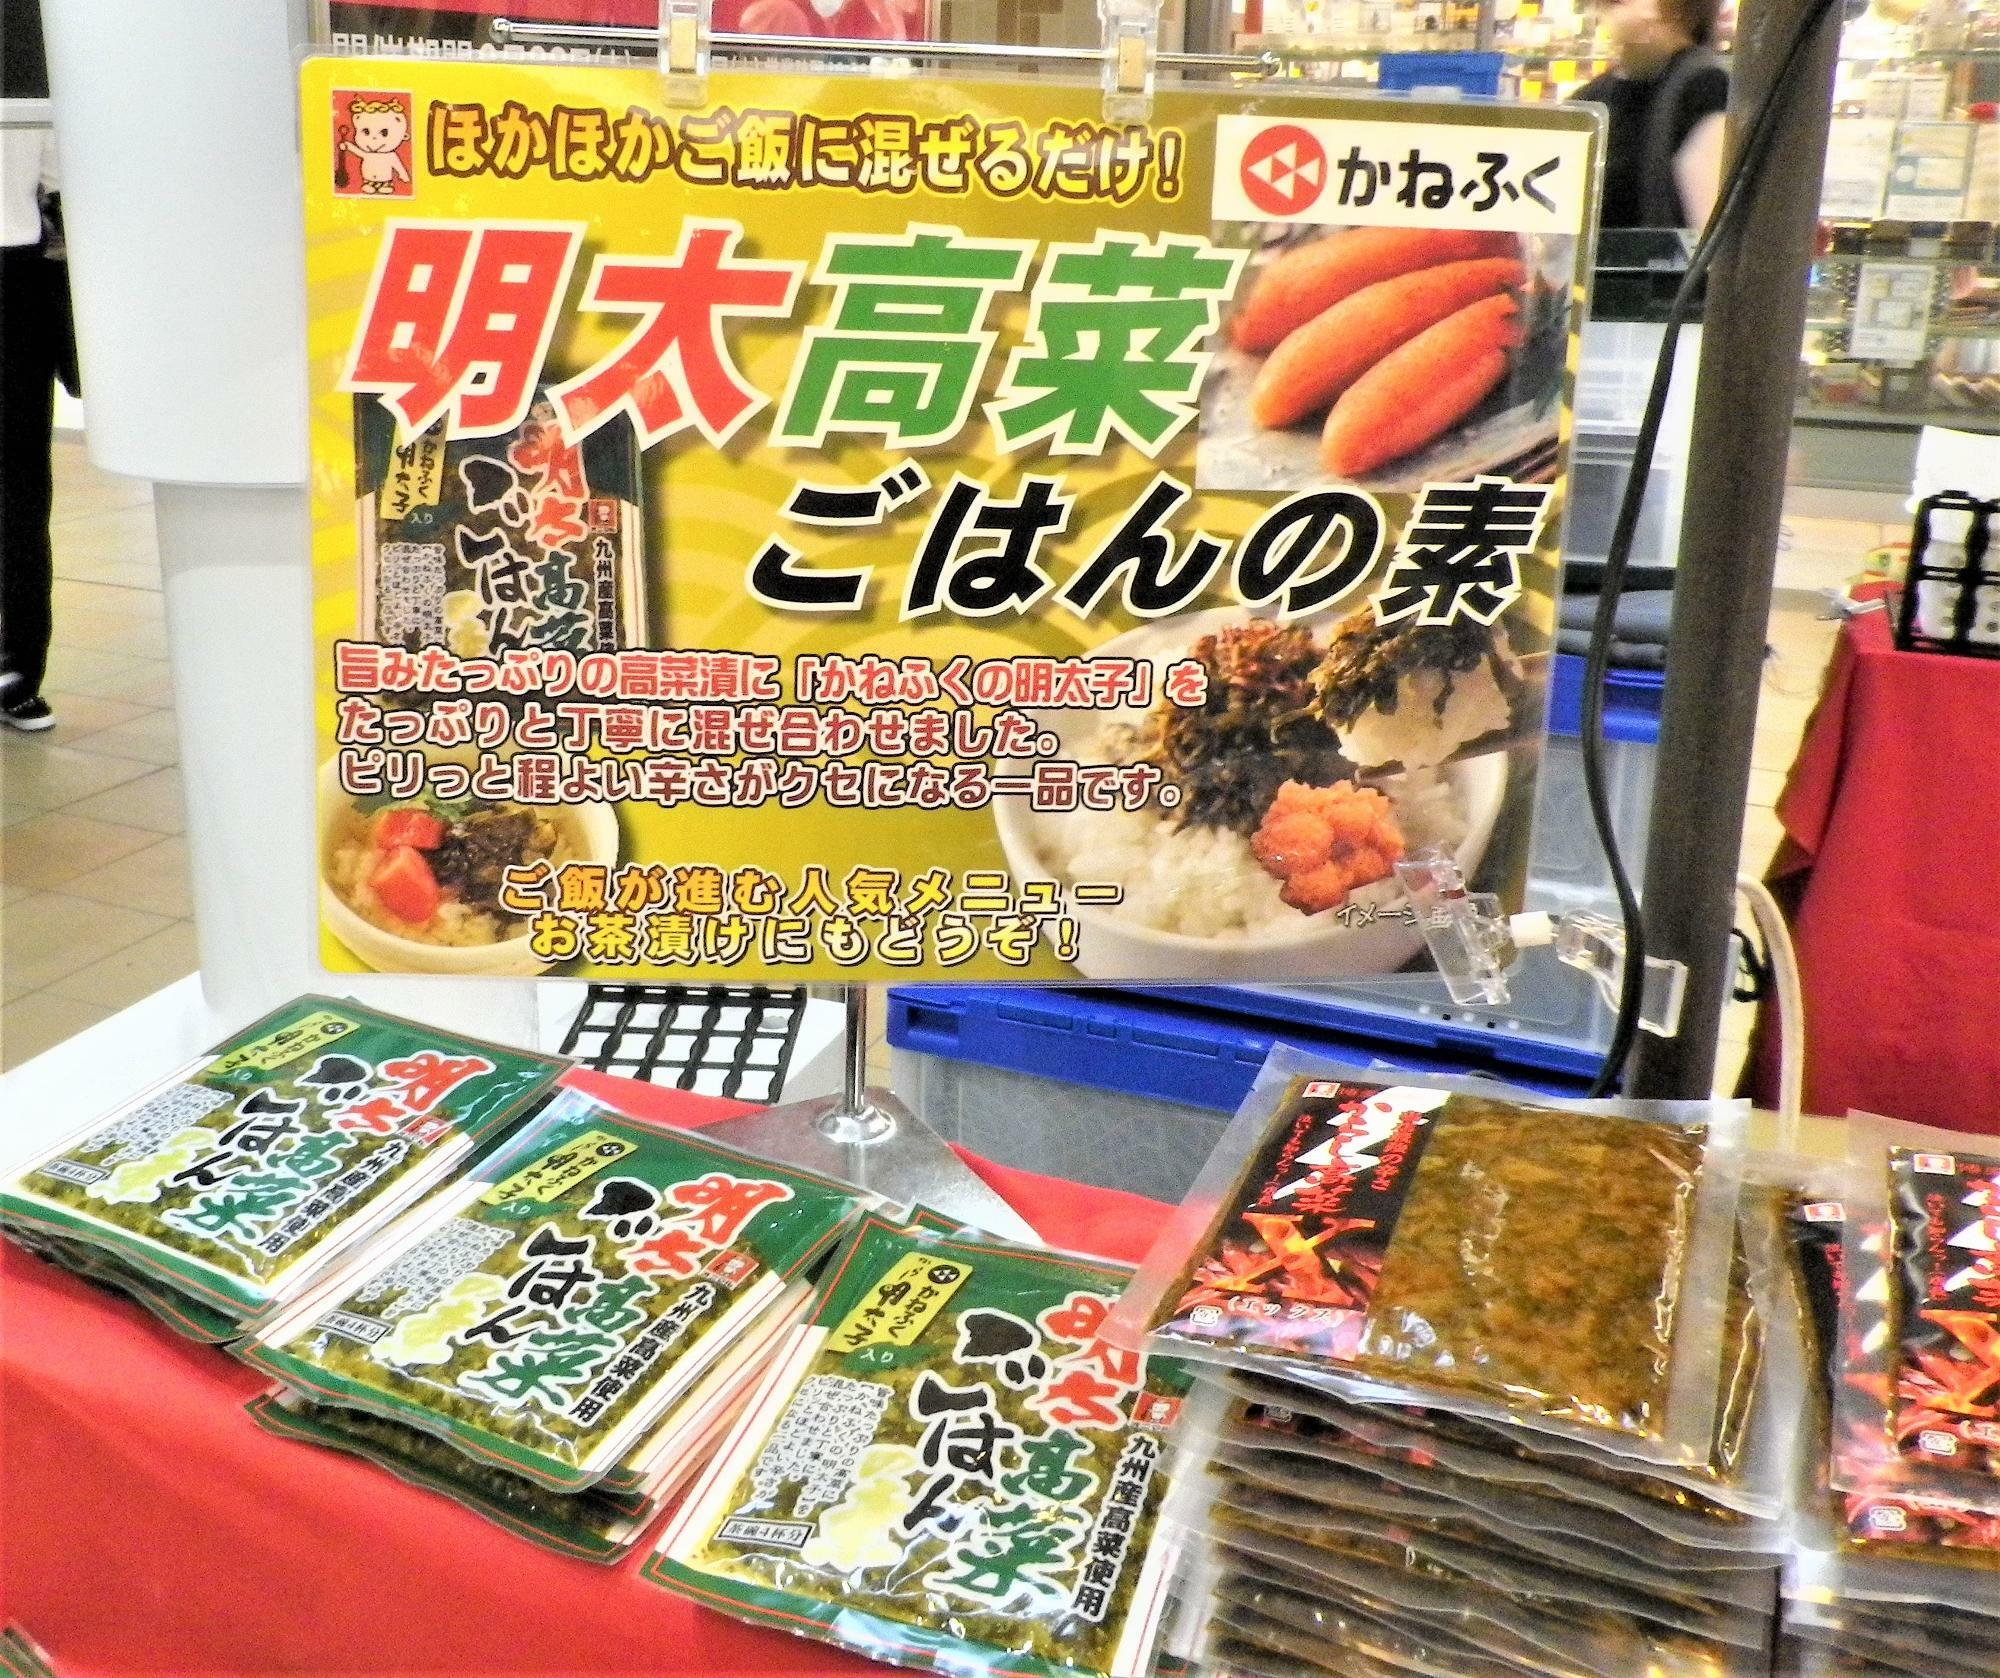 明太と高菜の美味しさがいっぺんに味わえる「明太高菜ごはんの素」。税込398円。